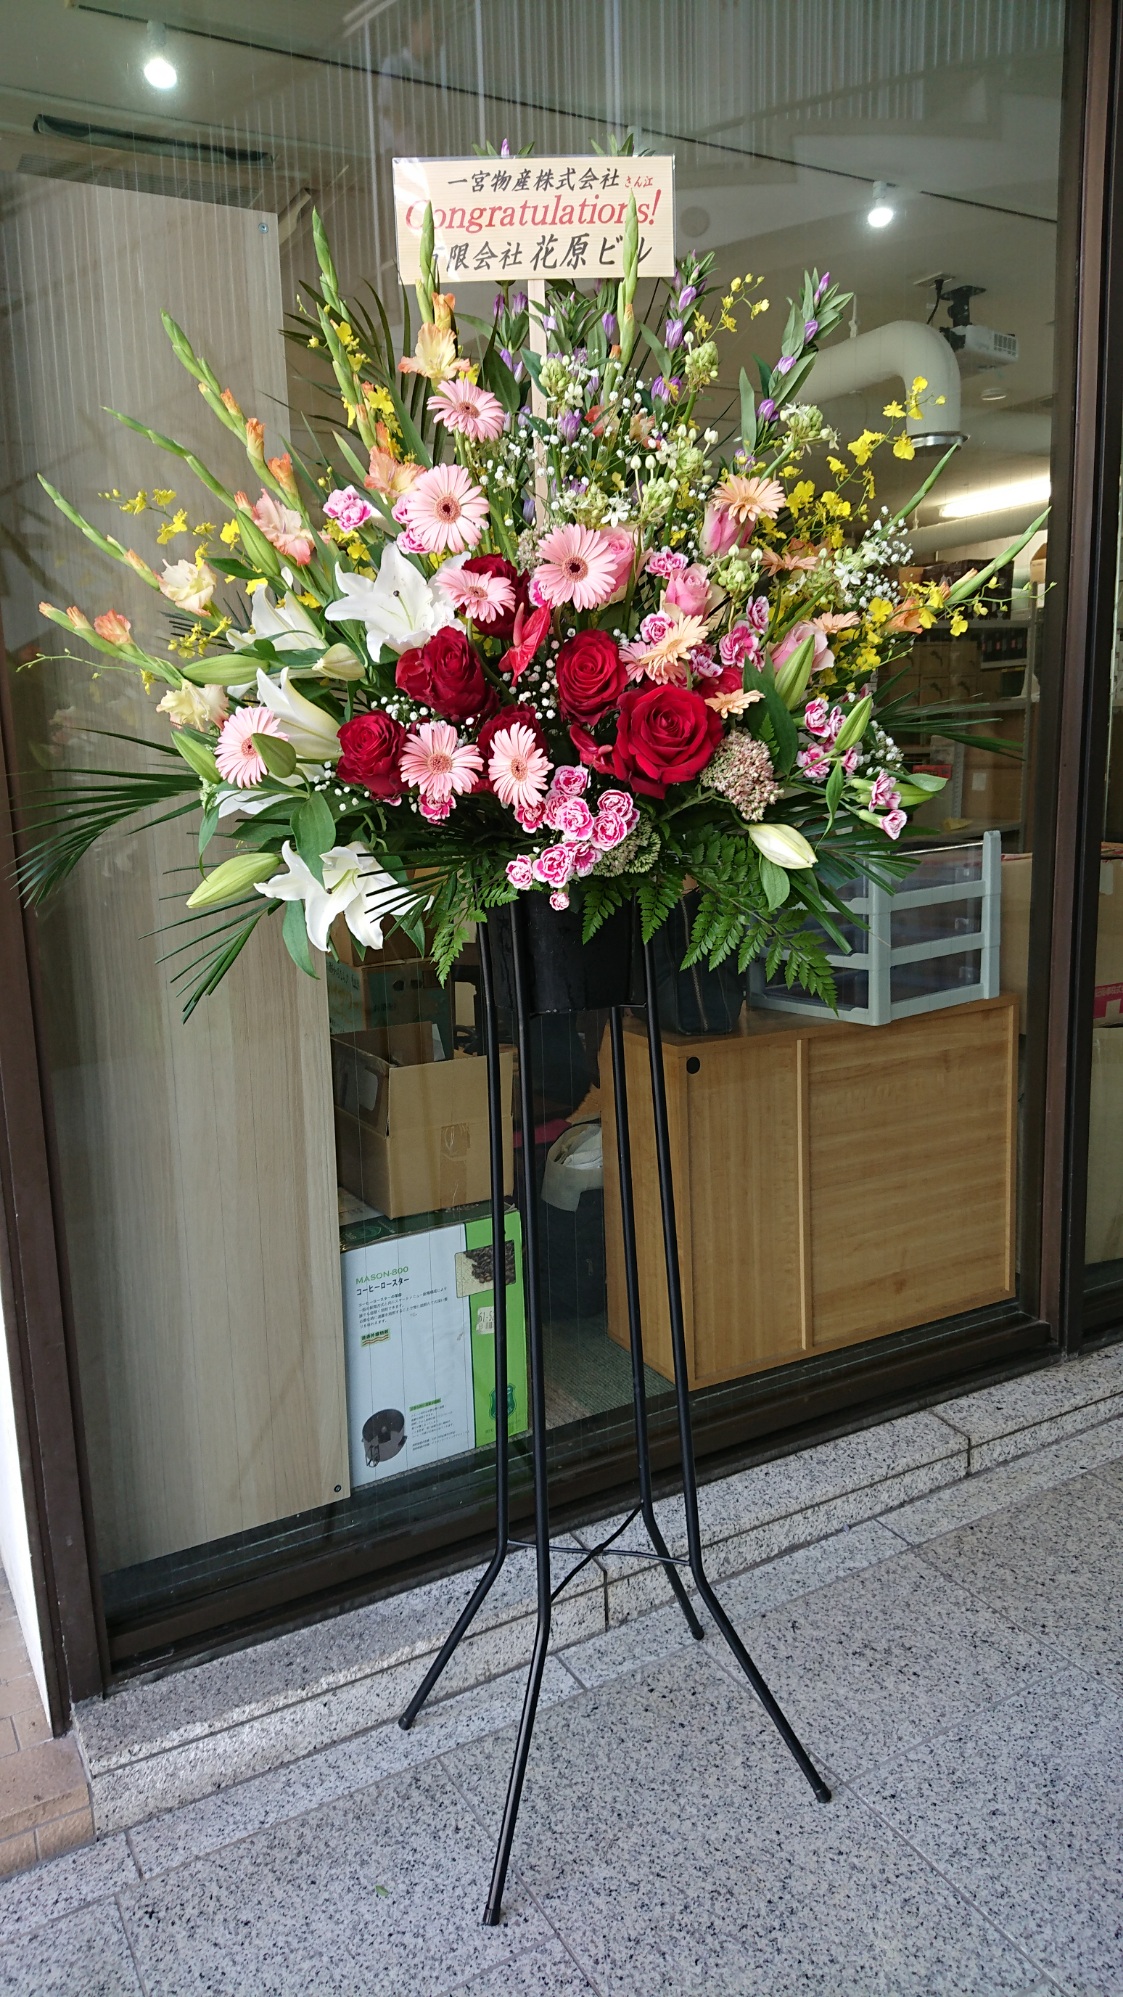 コーヒー豆専門店のオープンのお祝い フラワーギフト アレンジメントの阪本園芸 大阪市内なら即配達 開店祝いの胡蝶蘭やスタンド花